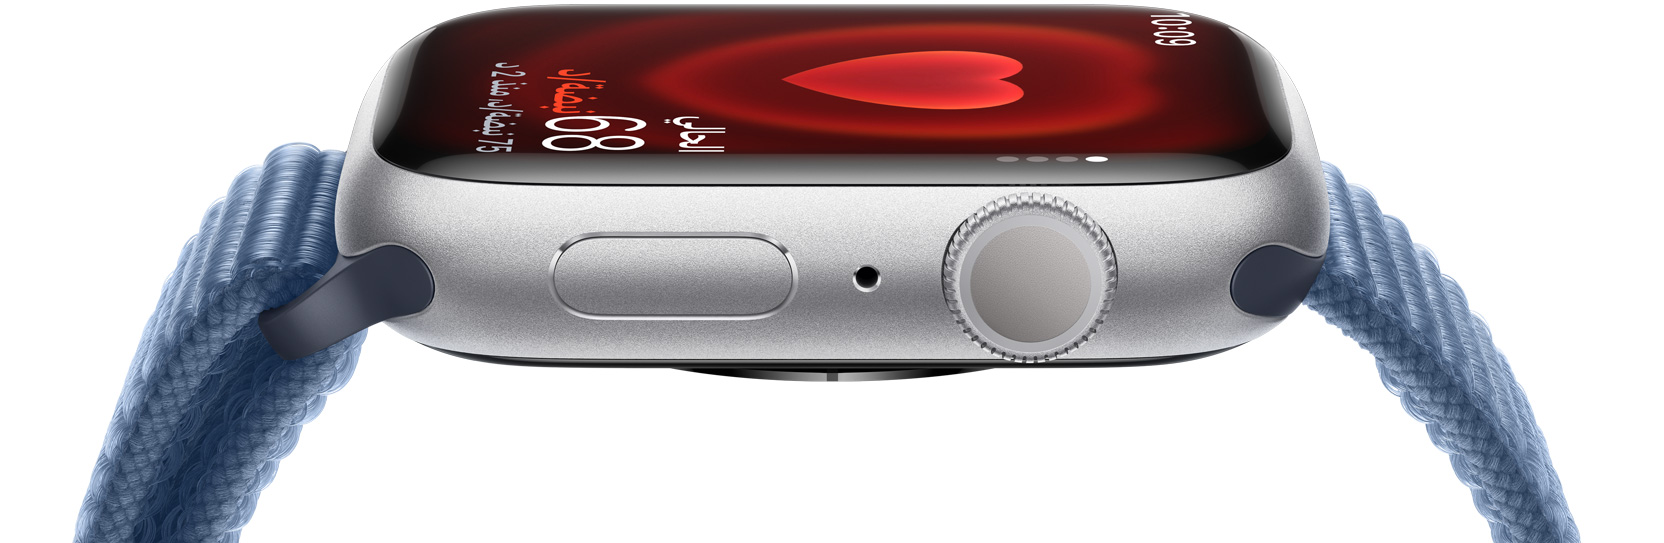 صورة جانبية لساعة Apple Watch‏ توضح نبضات قلب شخص ما.